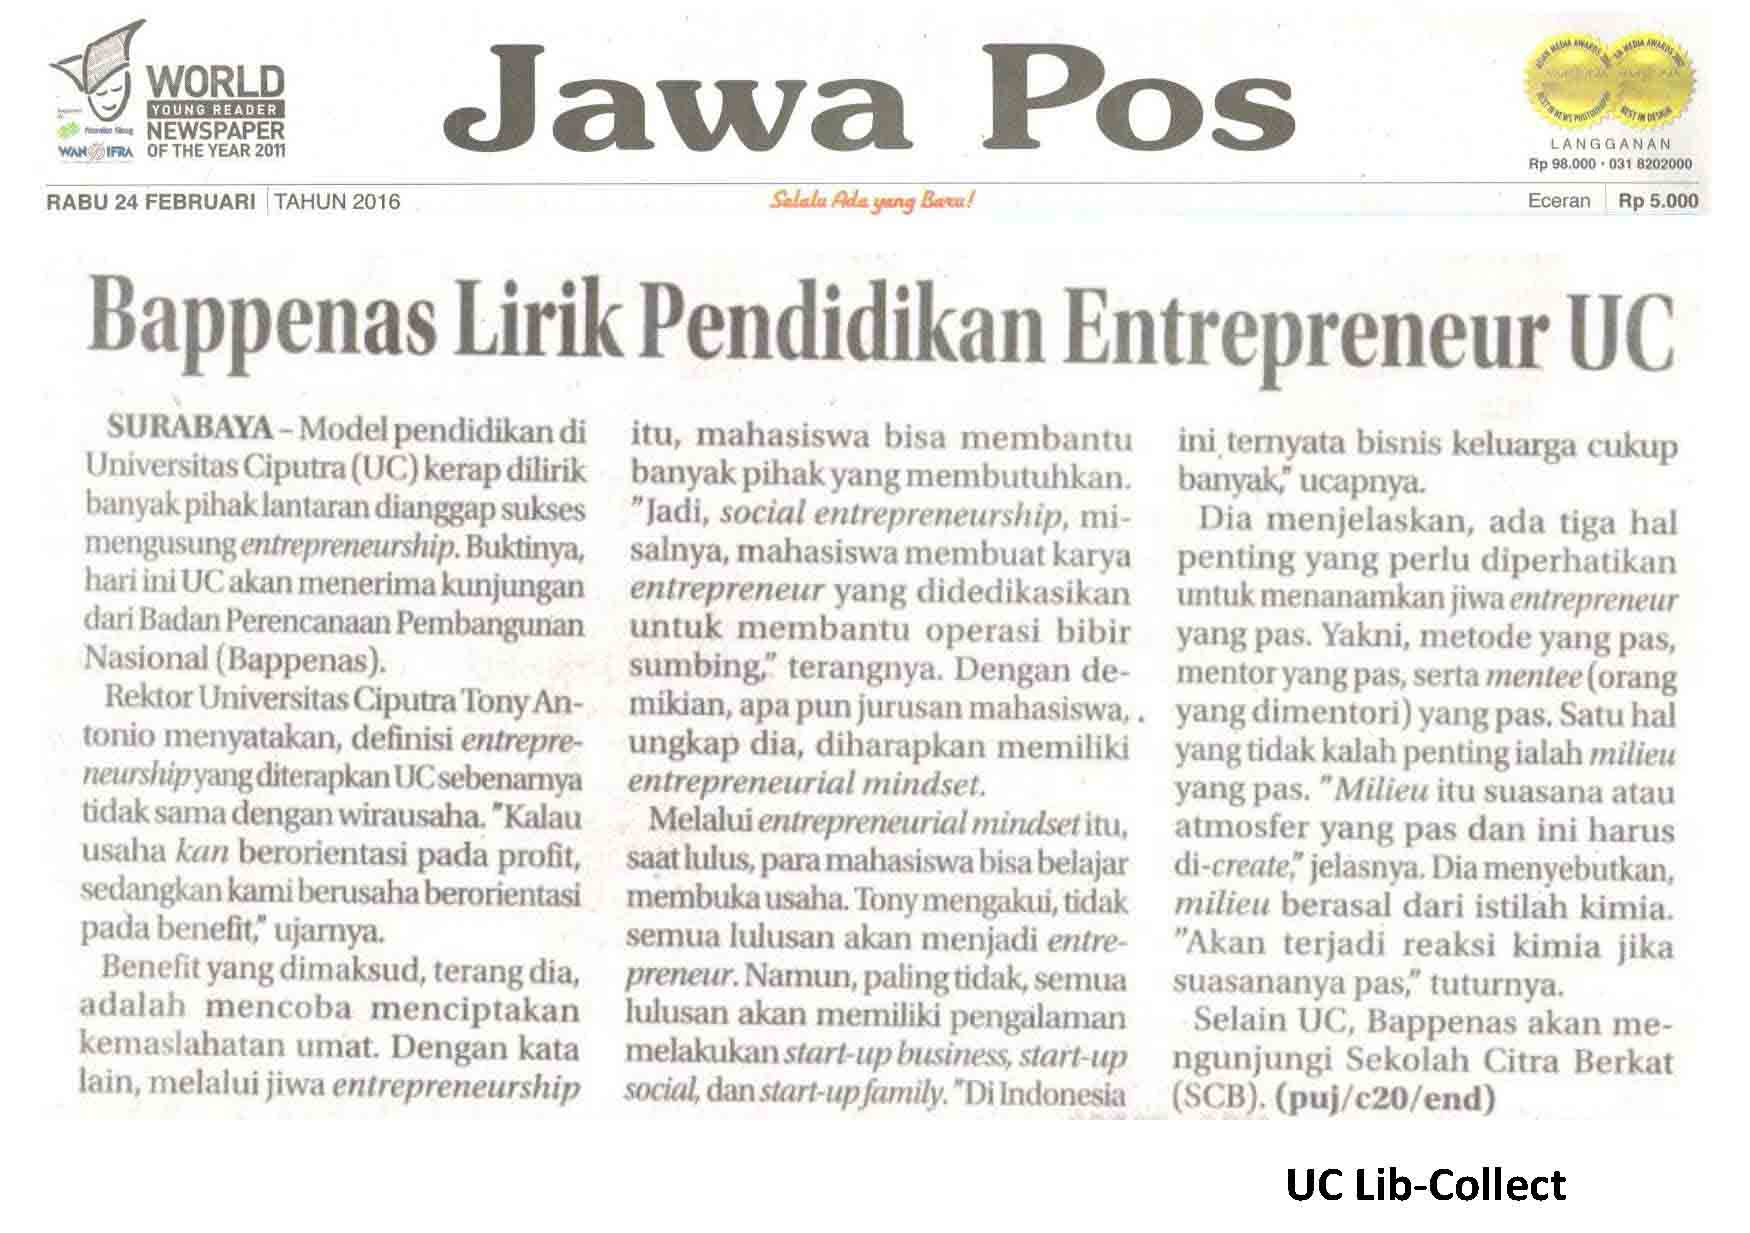 Bappenas Lirik Pendidikan Entrepreneur UC Jawa Pos 24 Februari 2016 Hal 28